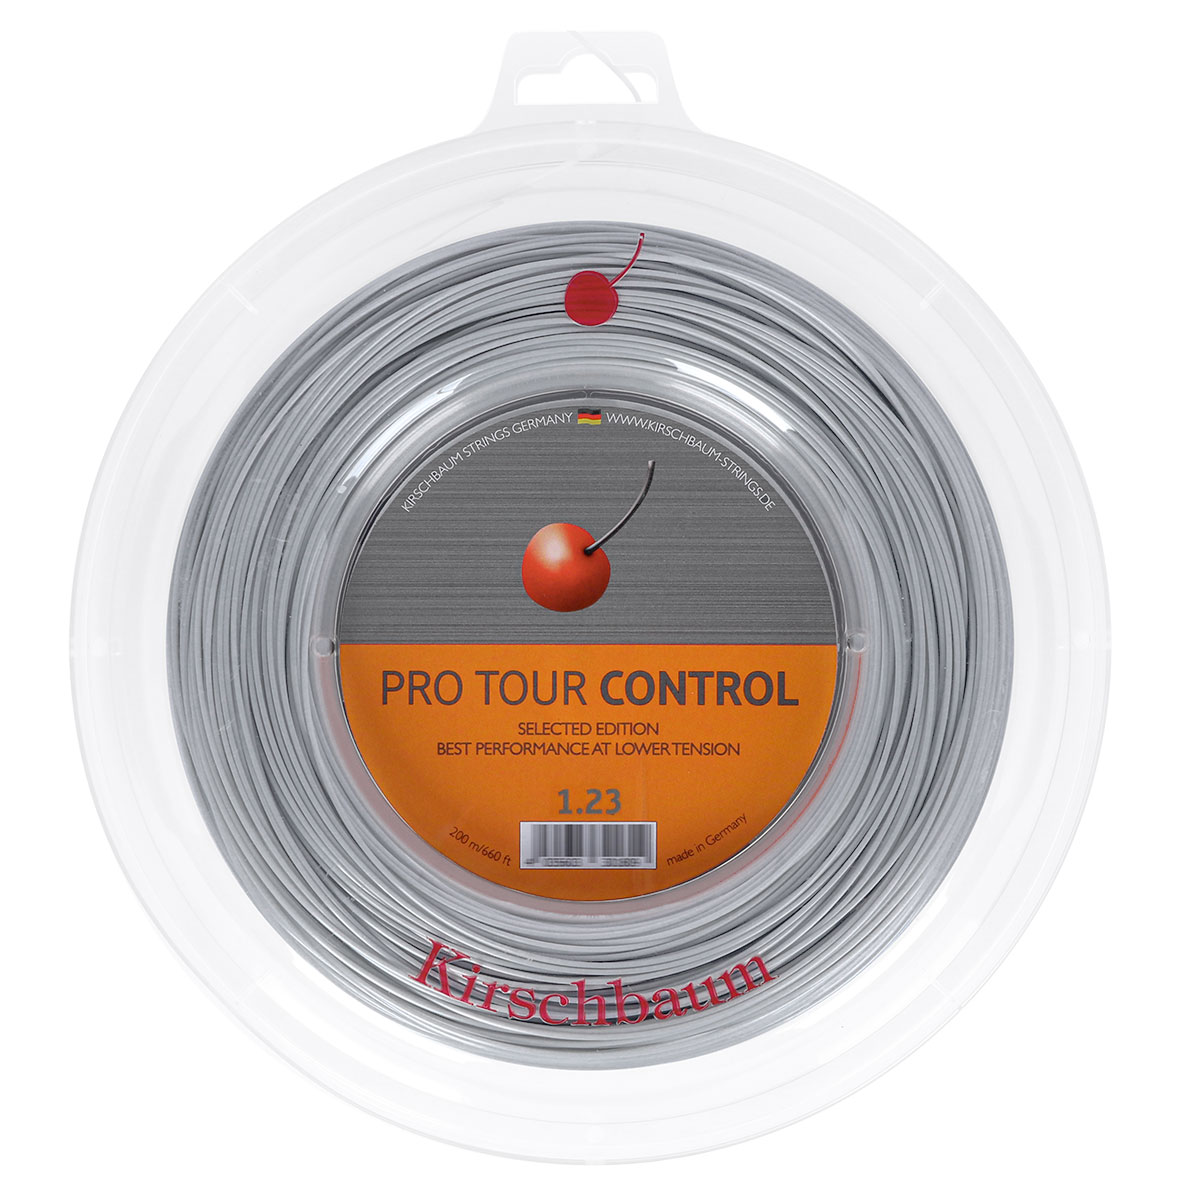 Corda Signum Pro Poly Plasma 1.28mm Pack com 06 unidades - Set Individual  em Promoção